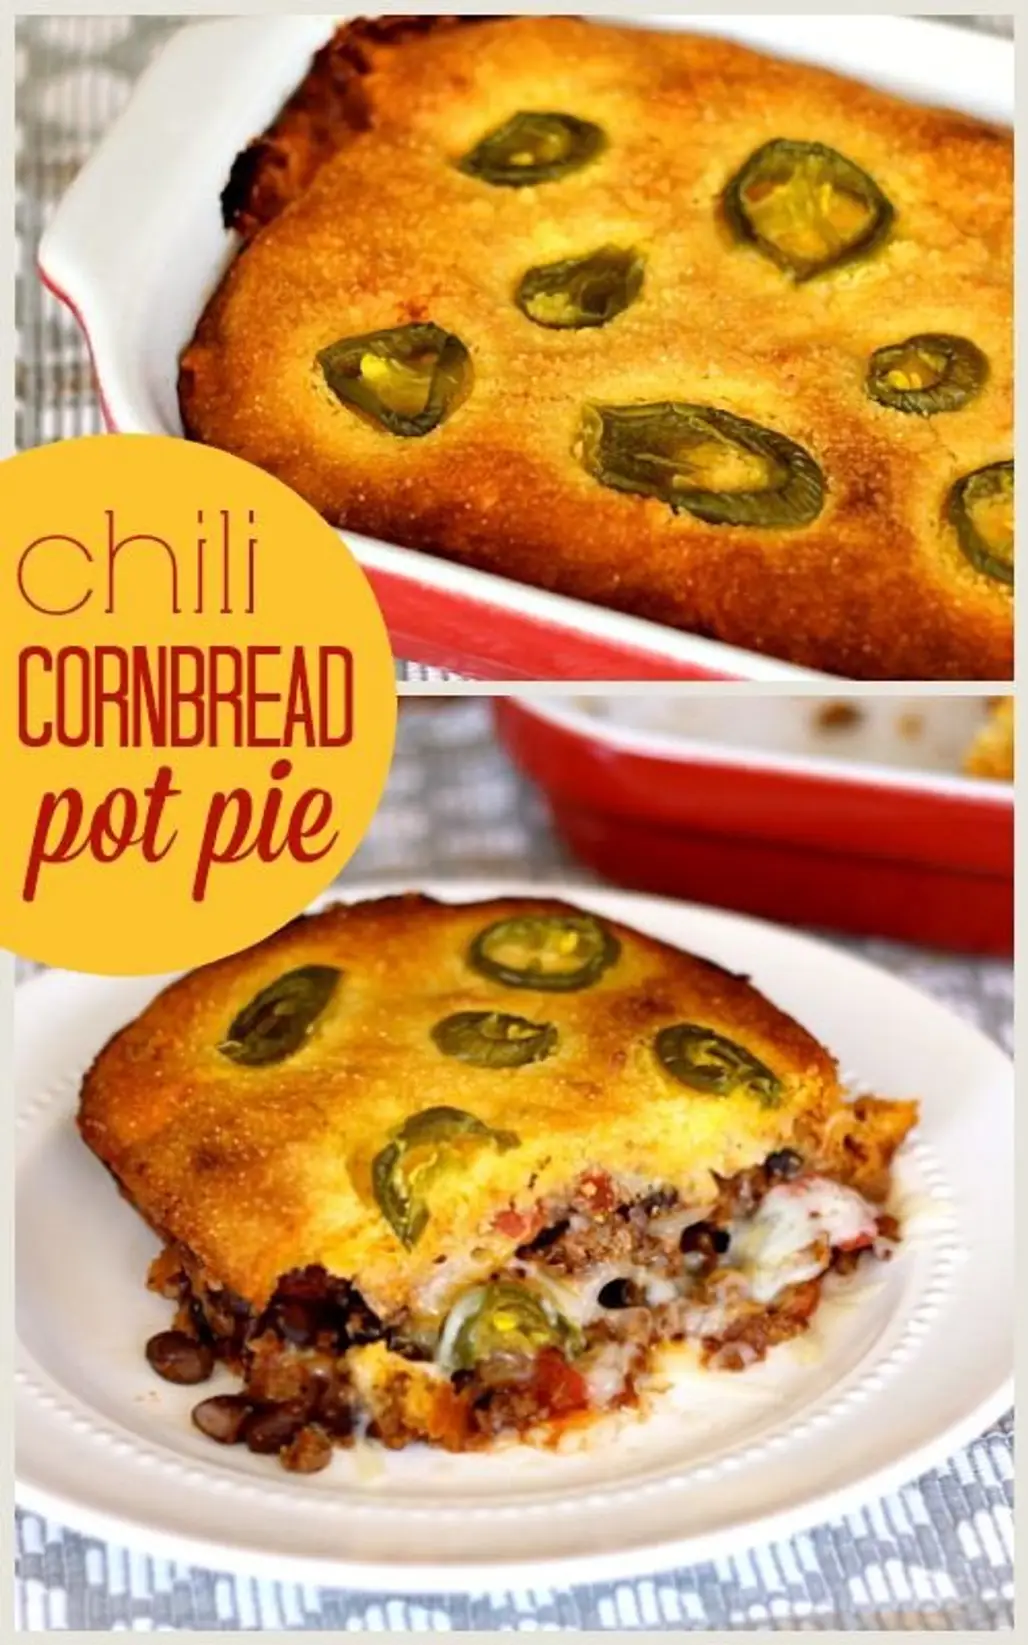 Chili Cornbread Pot Pie